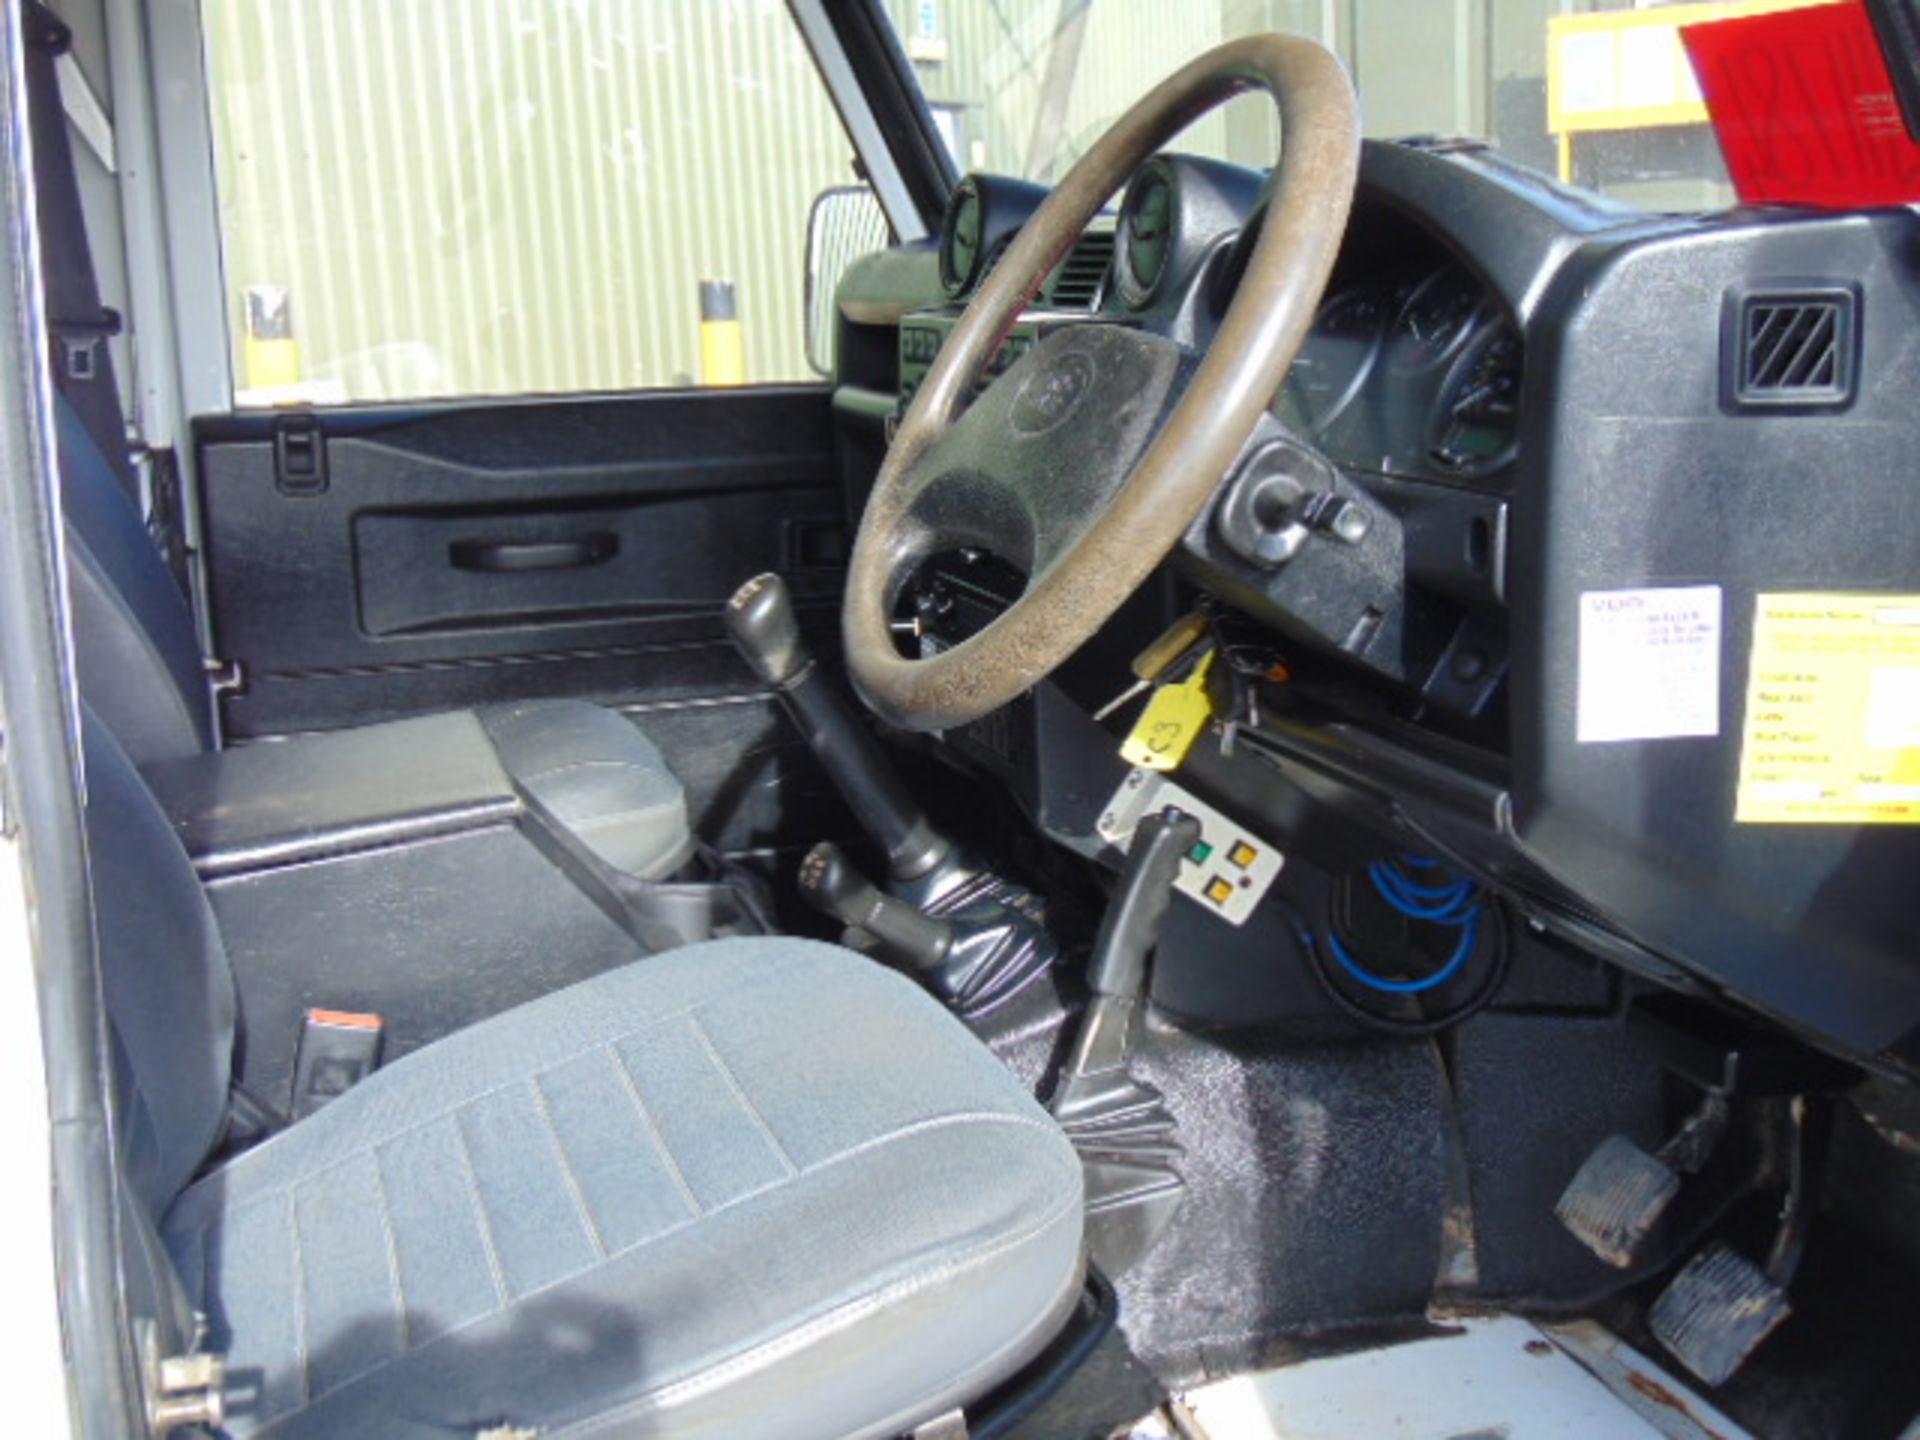 2011 Land Rover Defender 110 Puma hardtop 4x4 Utility vehicle (mobile workshop) - Image 25 of 36